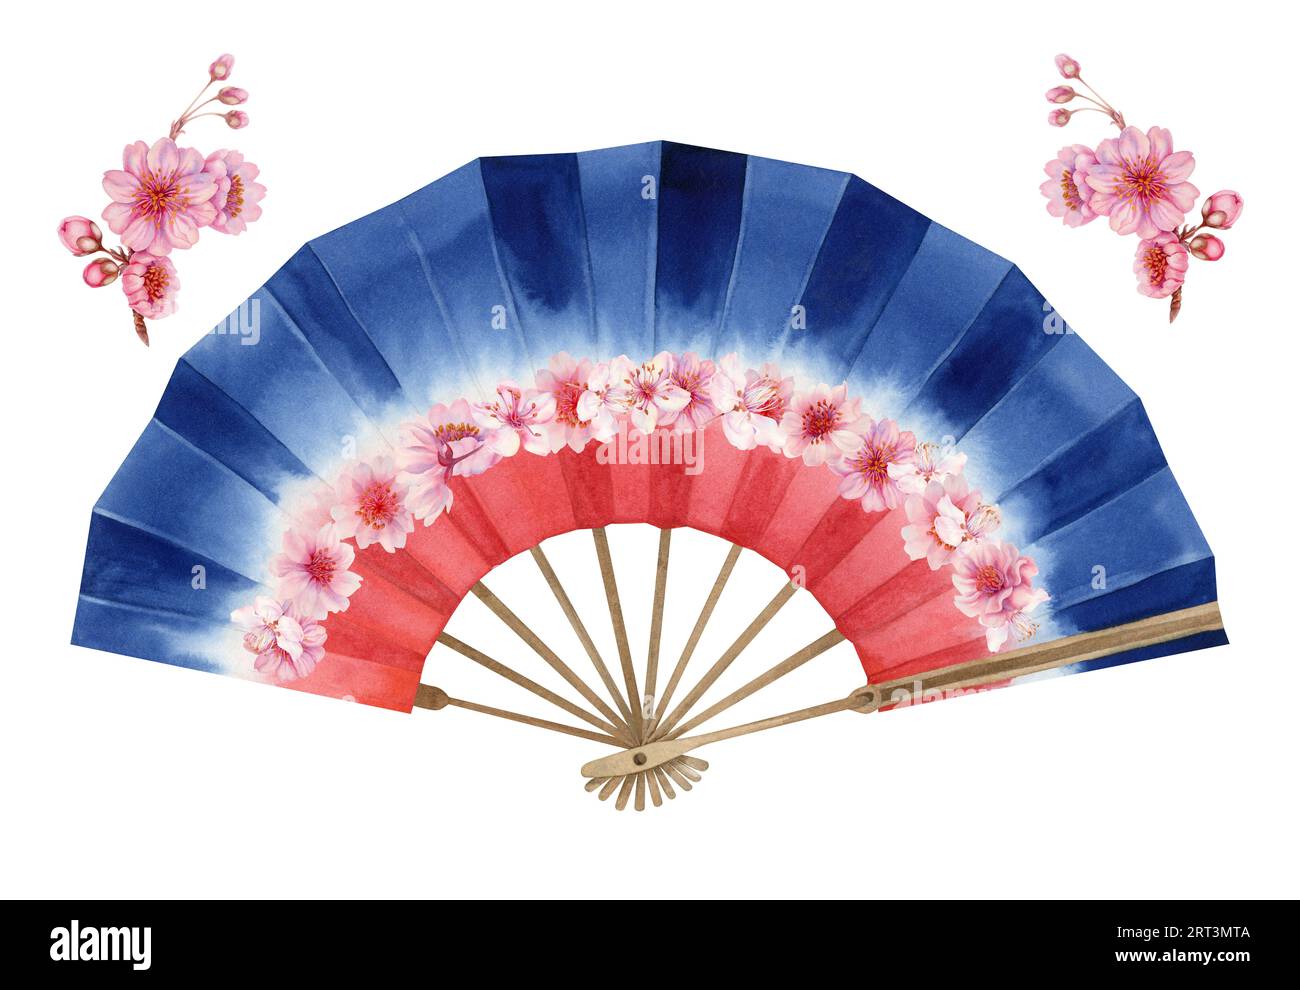 Illustrazione ad acquerello di un ventilatore a mano di carta aperta rosso, bianco e blu con fiori di ciliegio. Elemento isolato su sfondo bianco Foto Stock